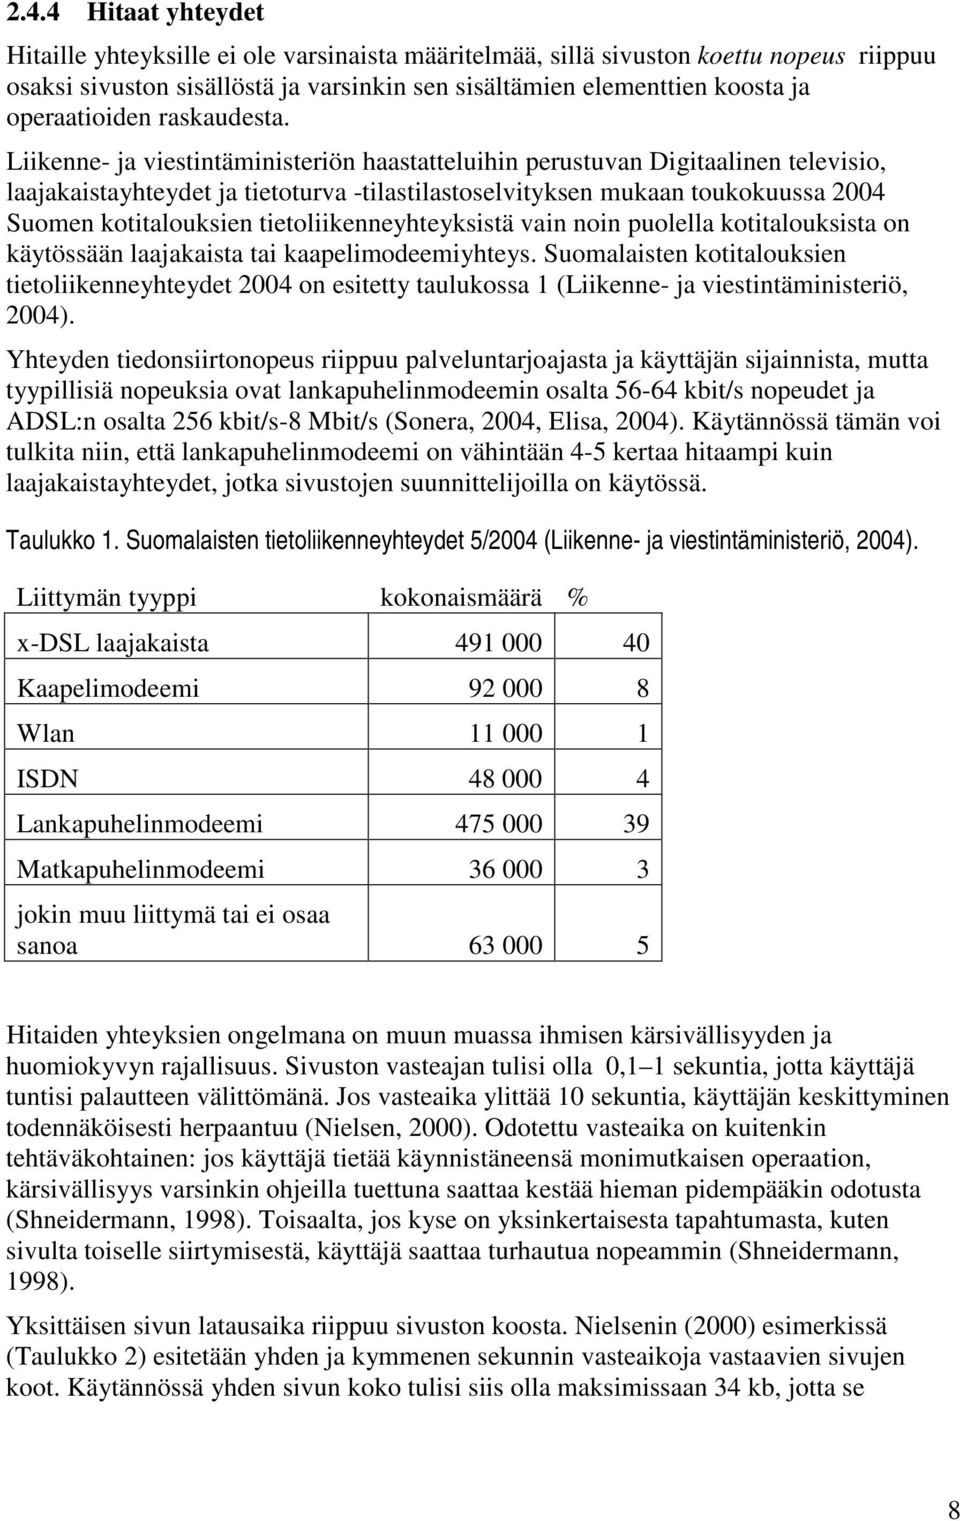 Liikenne- ja viestintäministeriön haastatteluihin perustuvan Digitaalinen televisio, laajakaistayhteydet ja tietoturva -tilastilastoselvityksen mukaan toukokuussa 2004 Suomen kotitalouksien